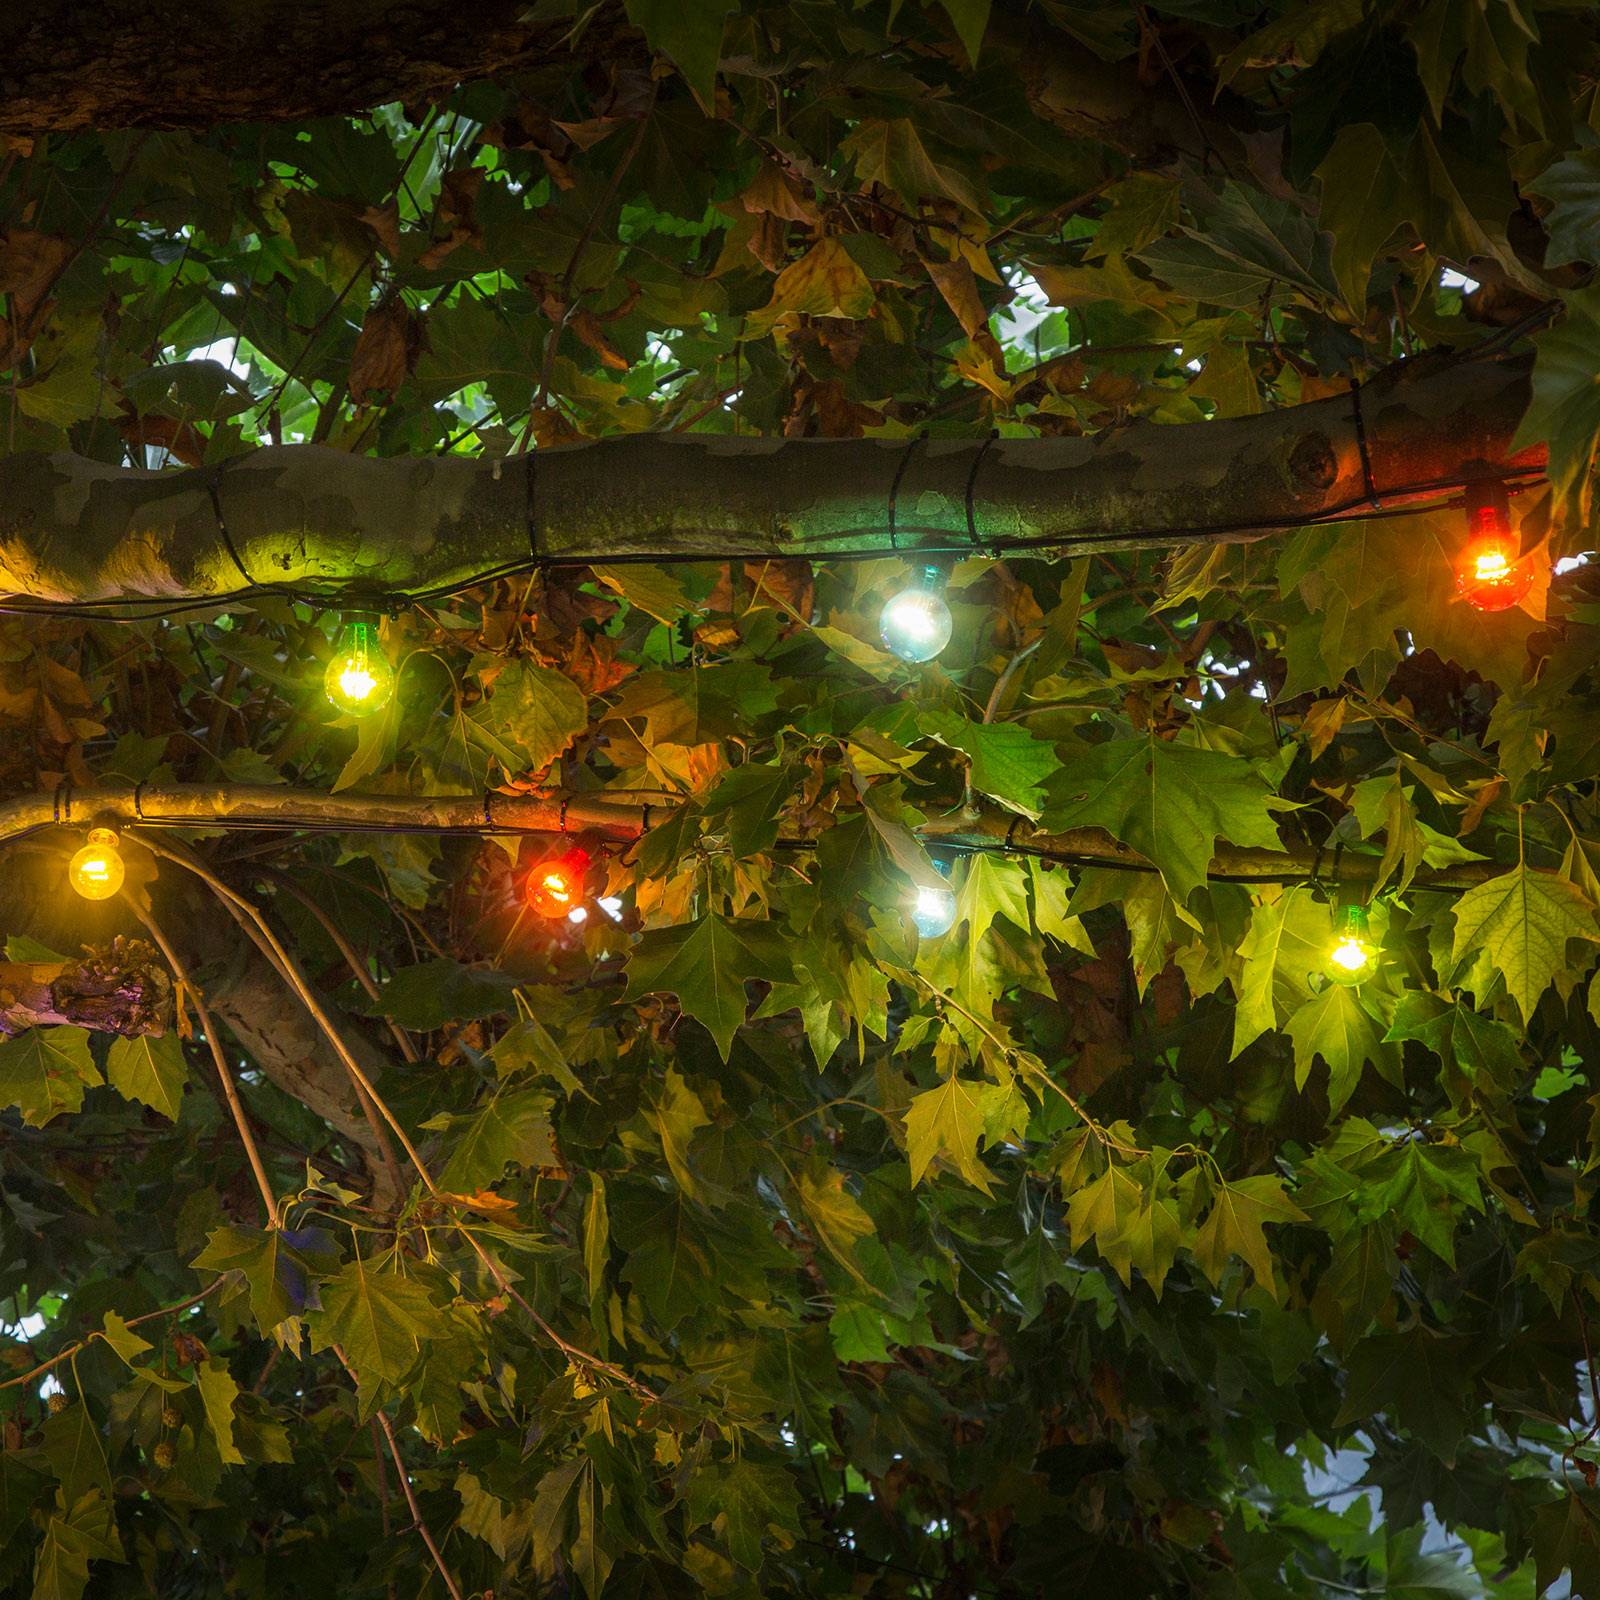 Konstsmide Christmas LED světelný řetěz pro prodloužení pivní zahrady, barevný